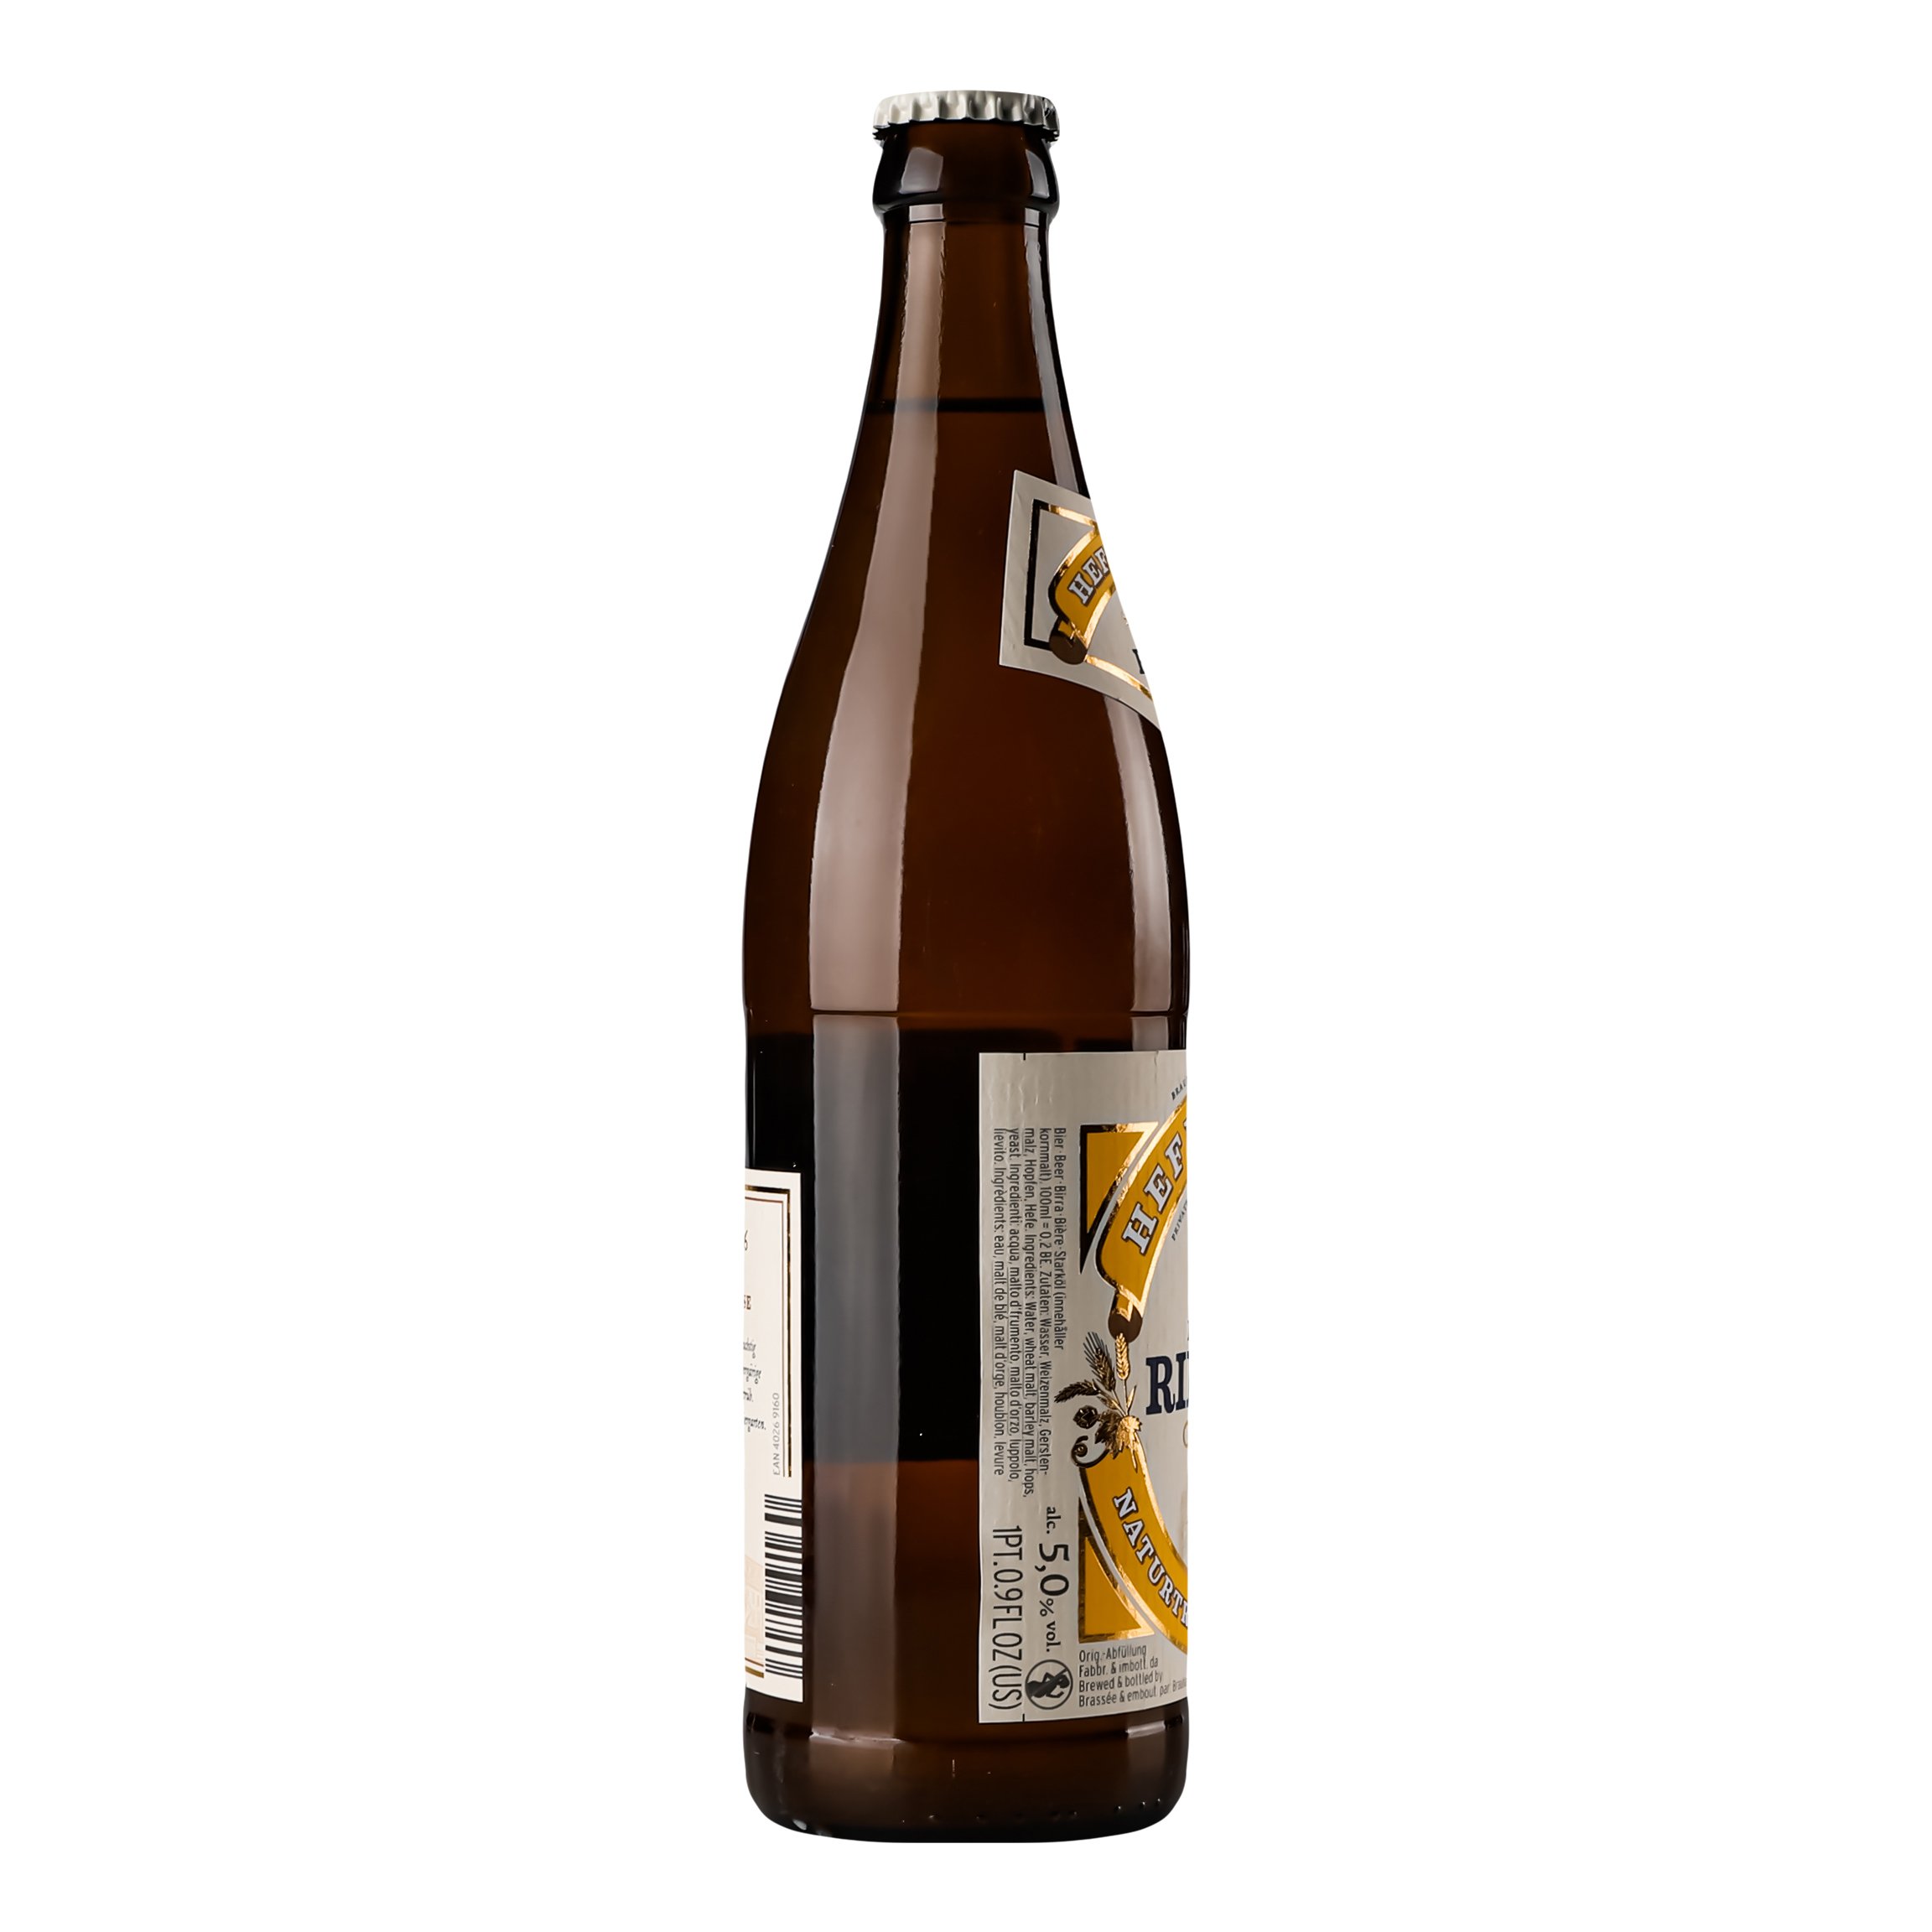 Пиво Riegele Hefe Weisse світле нефільтроване, 5%, 0,5 л (749207) - фото 3